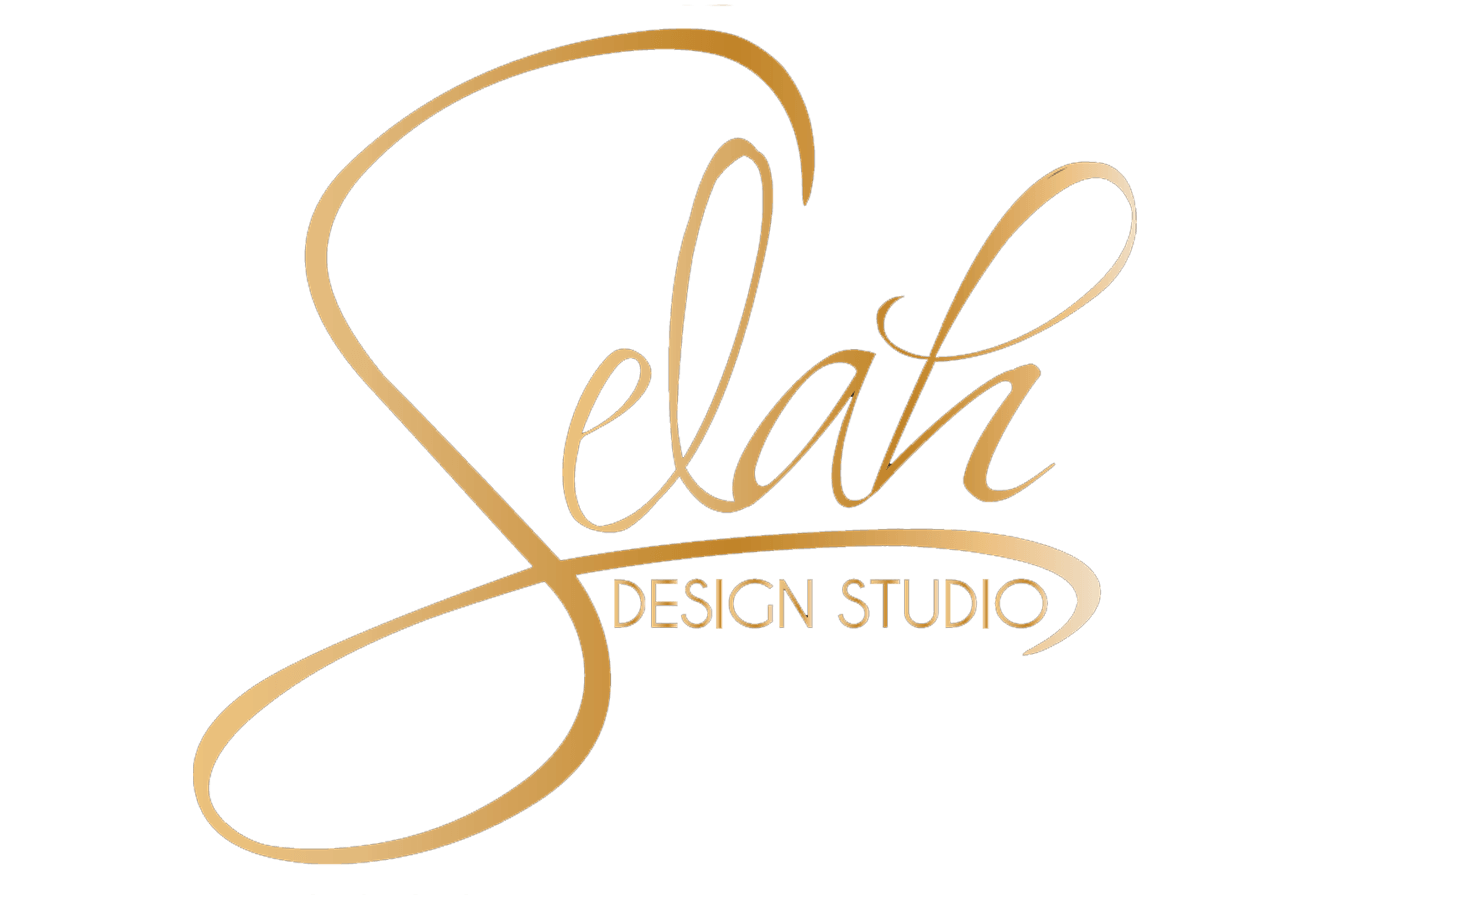 Selah Design Studio